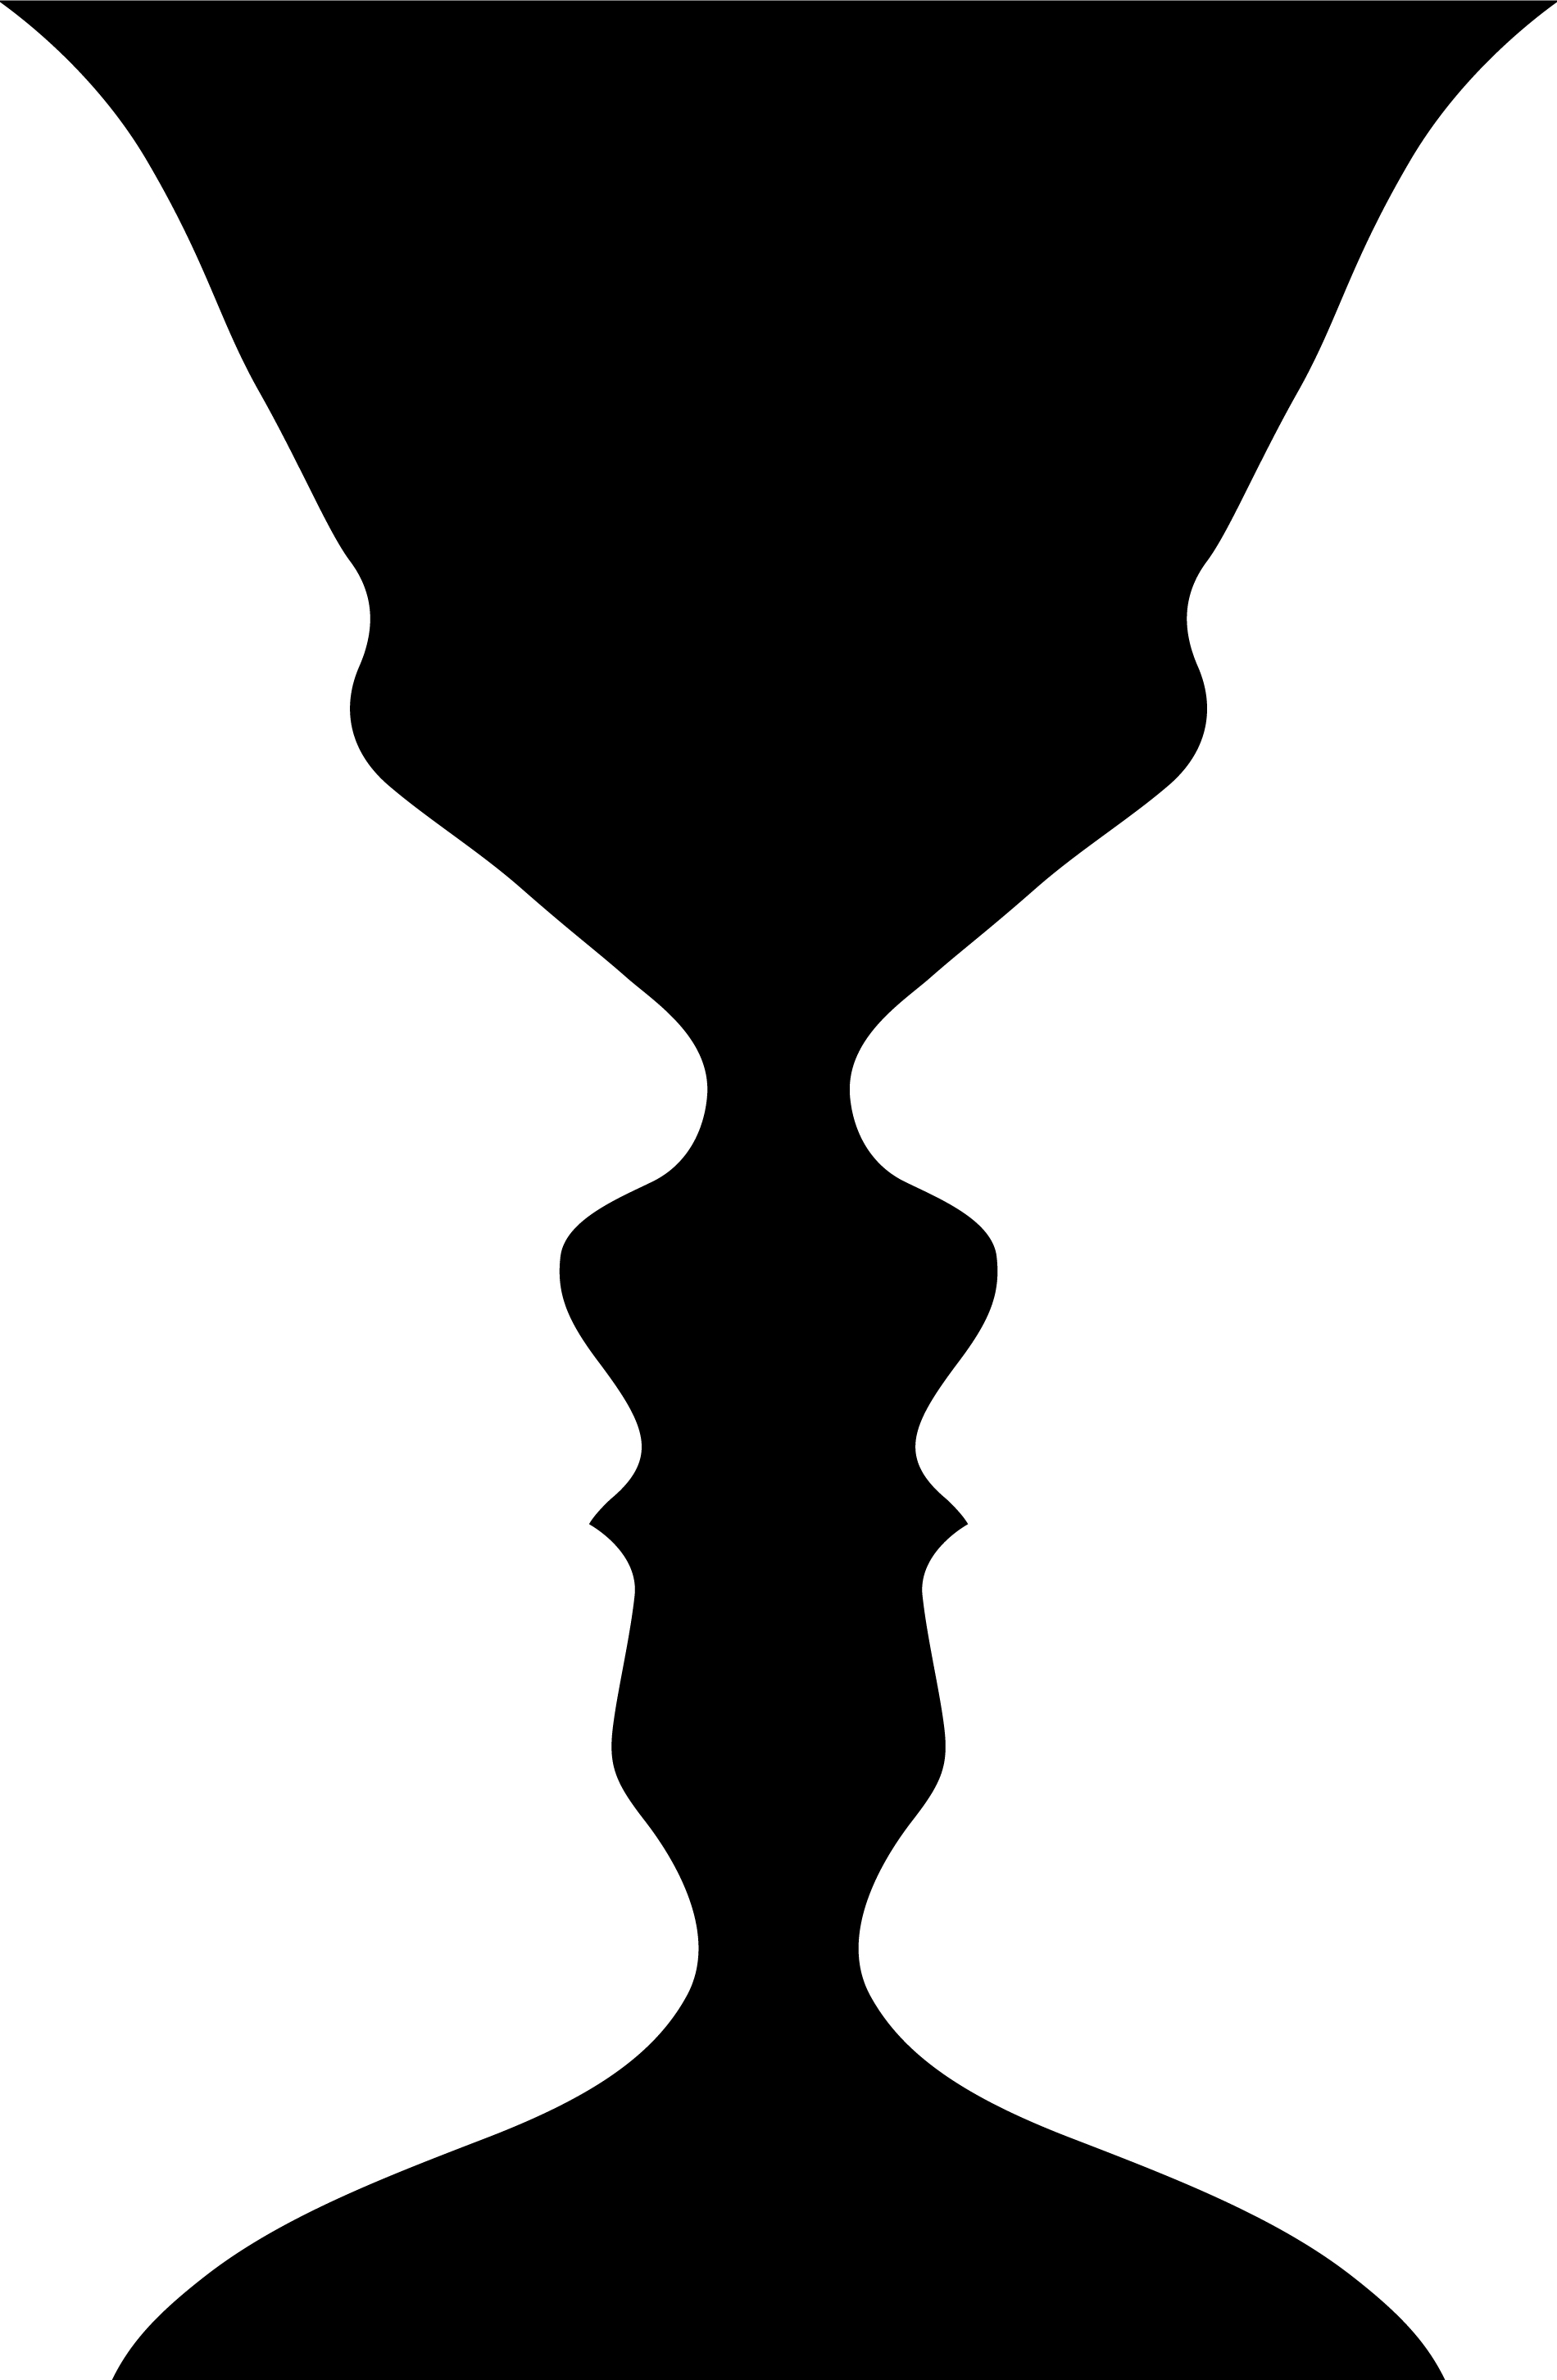 Ilusão de ótica: Um vaso ou dois rostos? (foto: Reprodução)